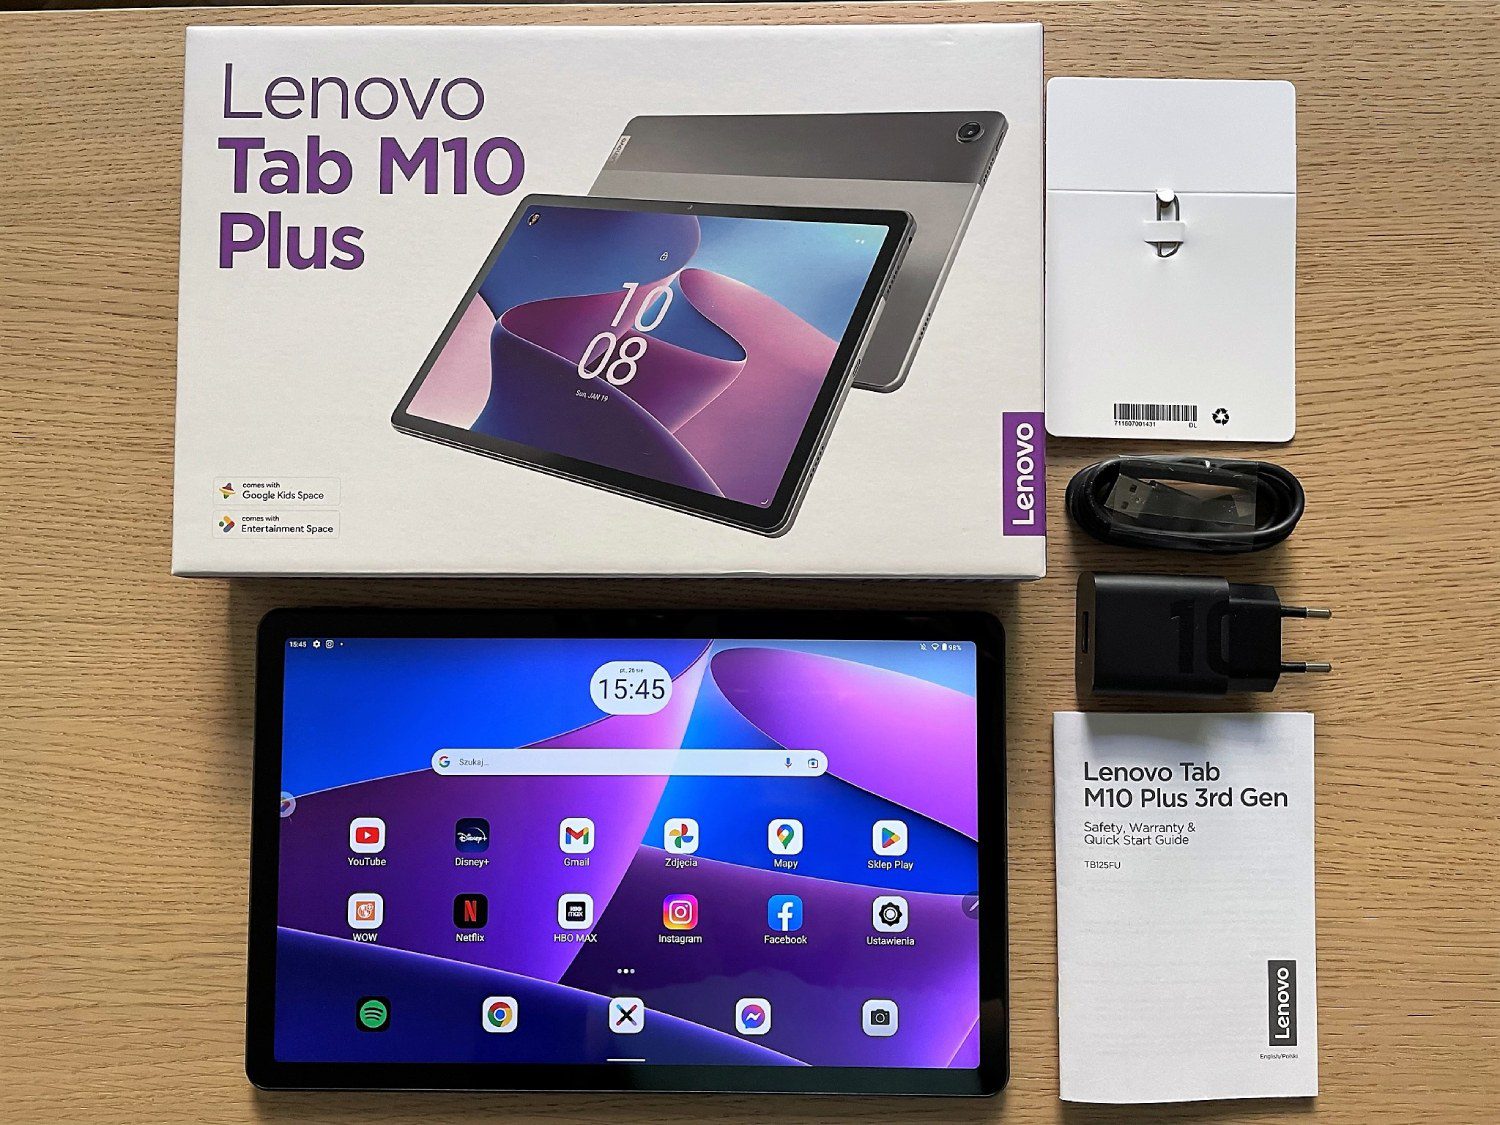 LENOVO Tab M10 3 gen. TB328FU 10.1 4/64GB Wi-Fi Szary Tablet - niskie ceny  i opinie w Media Expert